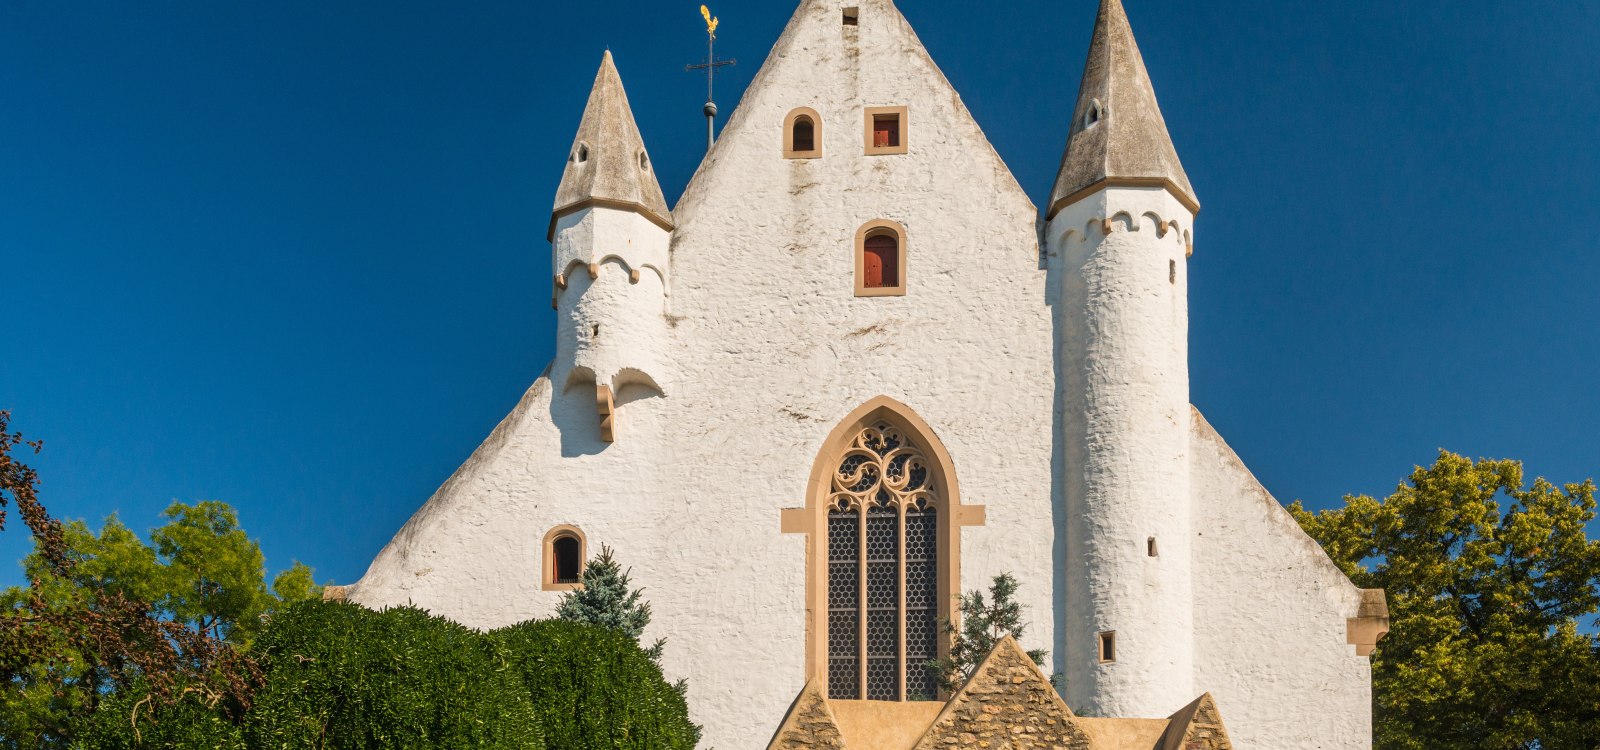 Burgkirche Ober-Ingelheim, © Rheinhessen-Touristik GmbH/Dominik Ketz